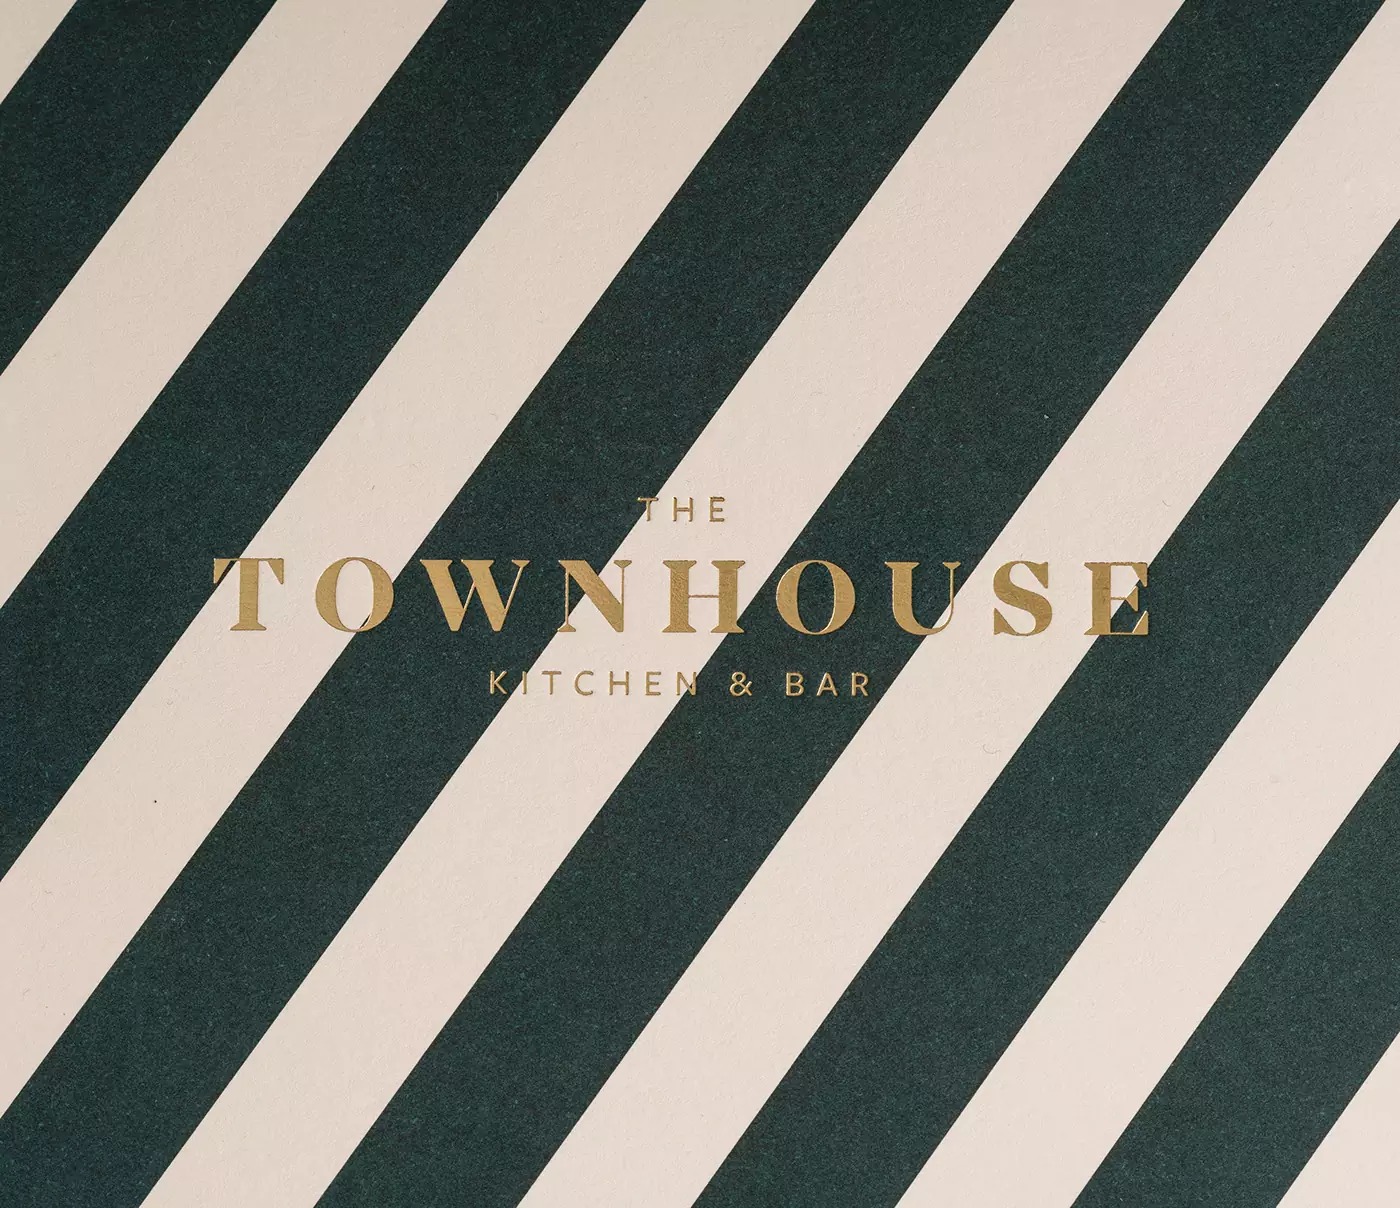 时尚条纹风格+典雅金箔Townhouse餐厅品牌形象设计作品欣赏。